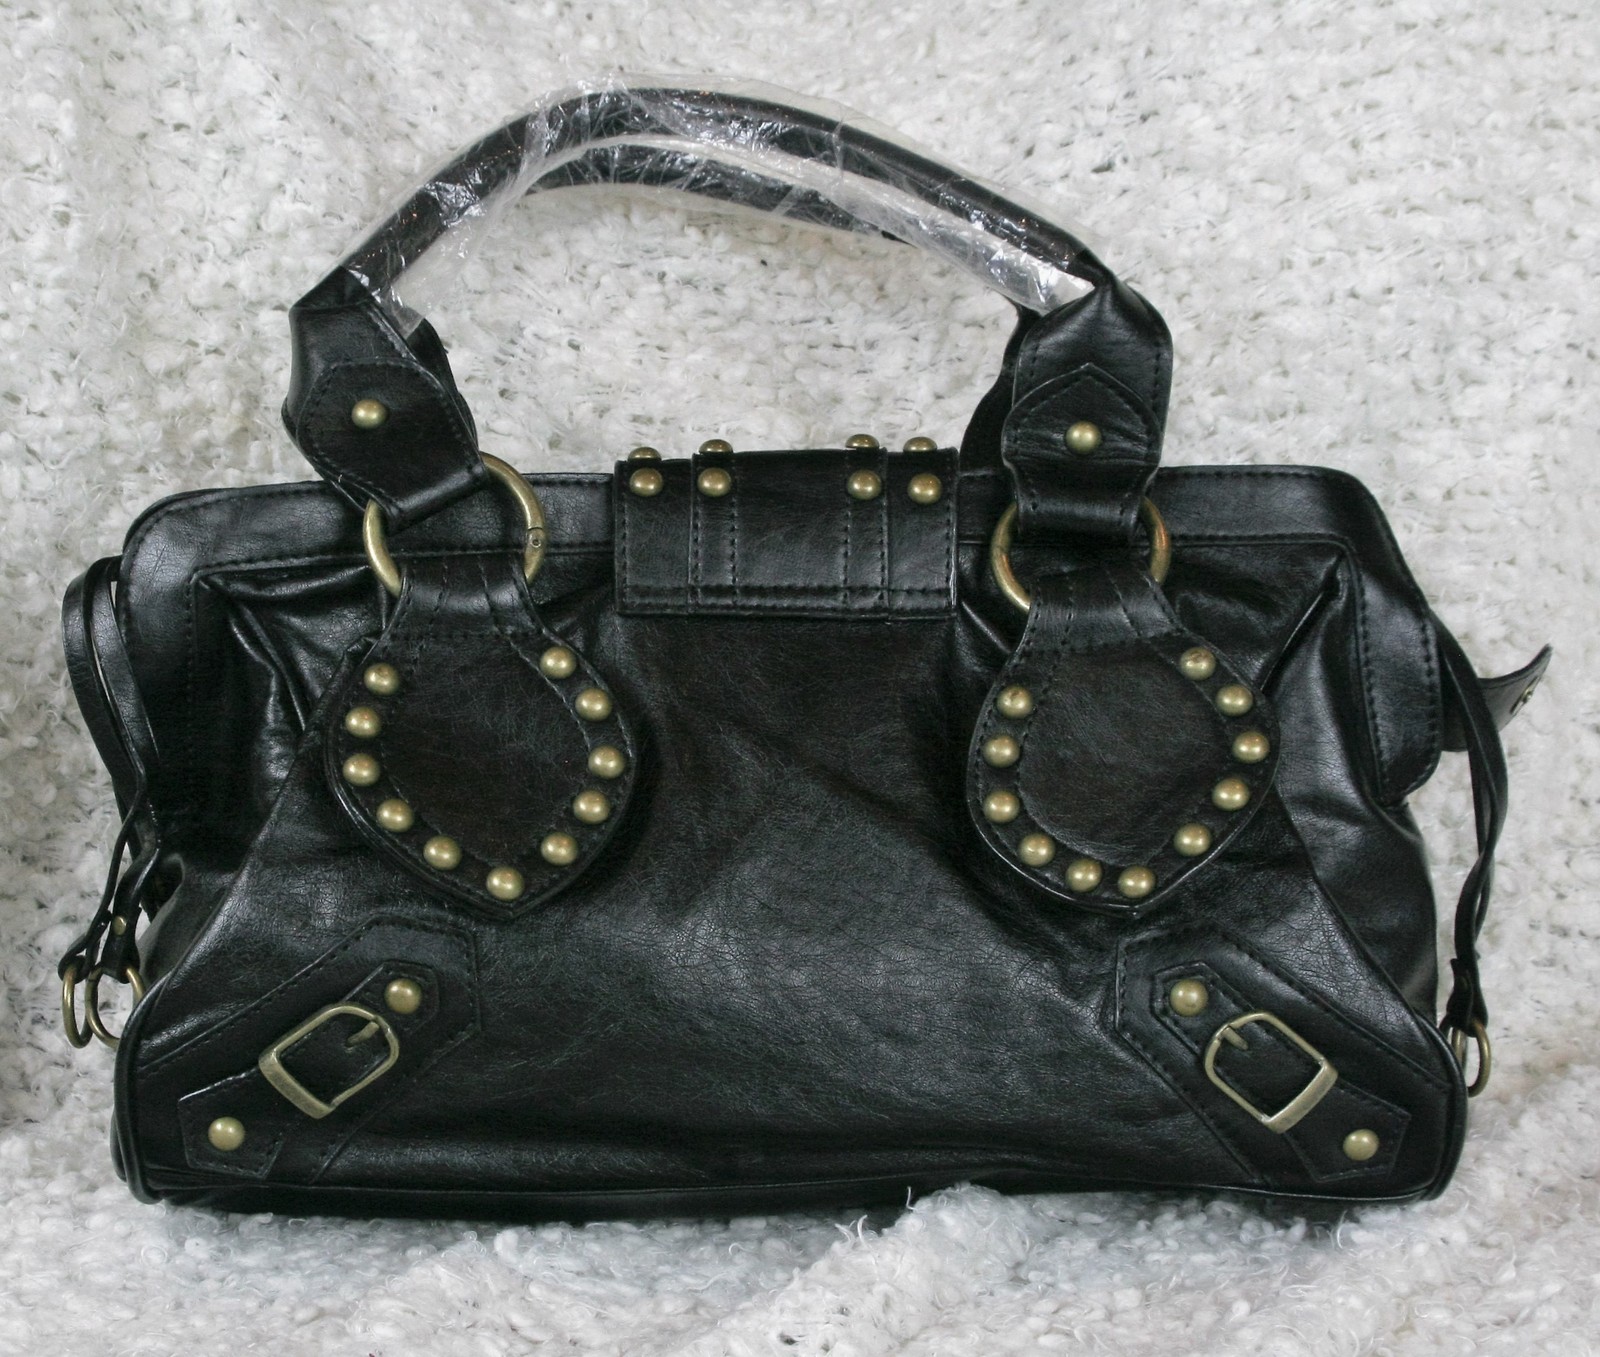 Black Gold Studded Undbranded Faux Leather Handbag Shoulder Bag New ...